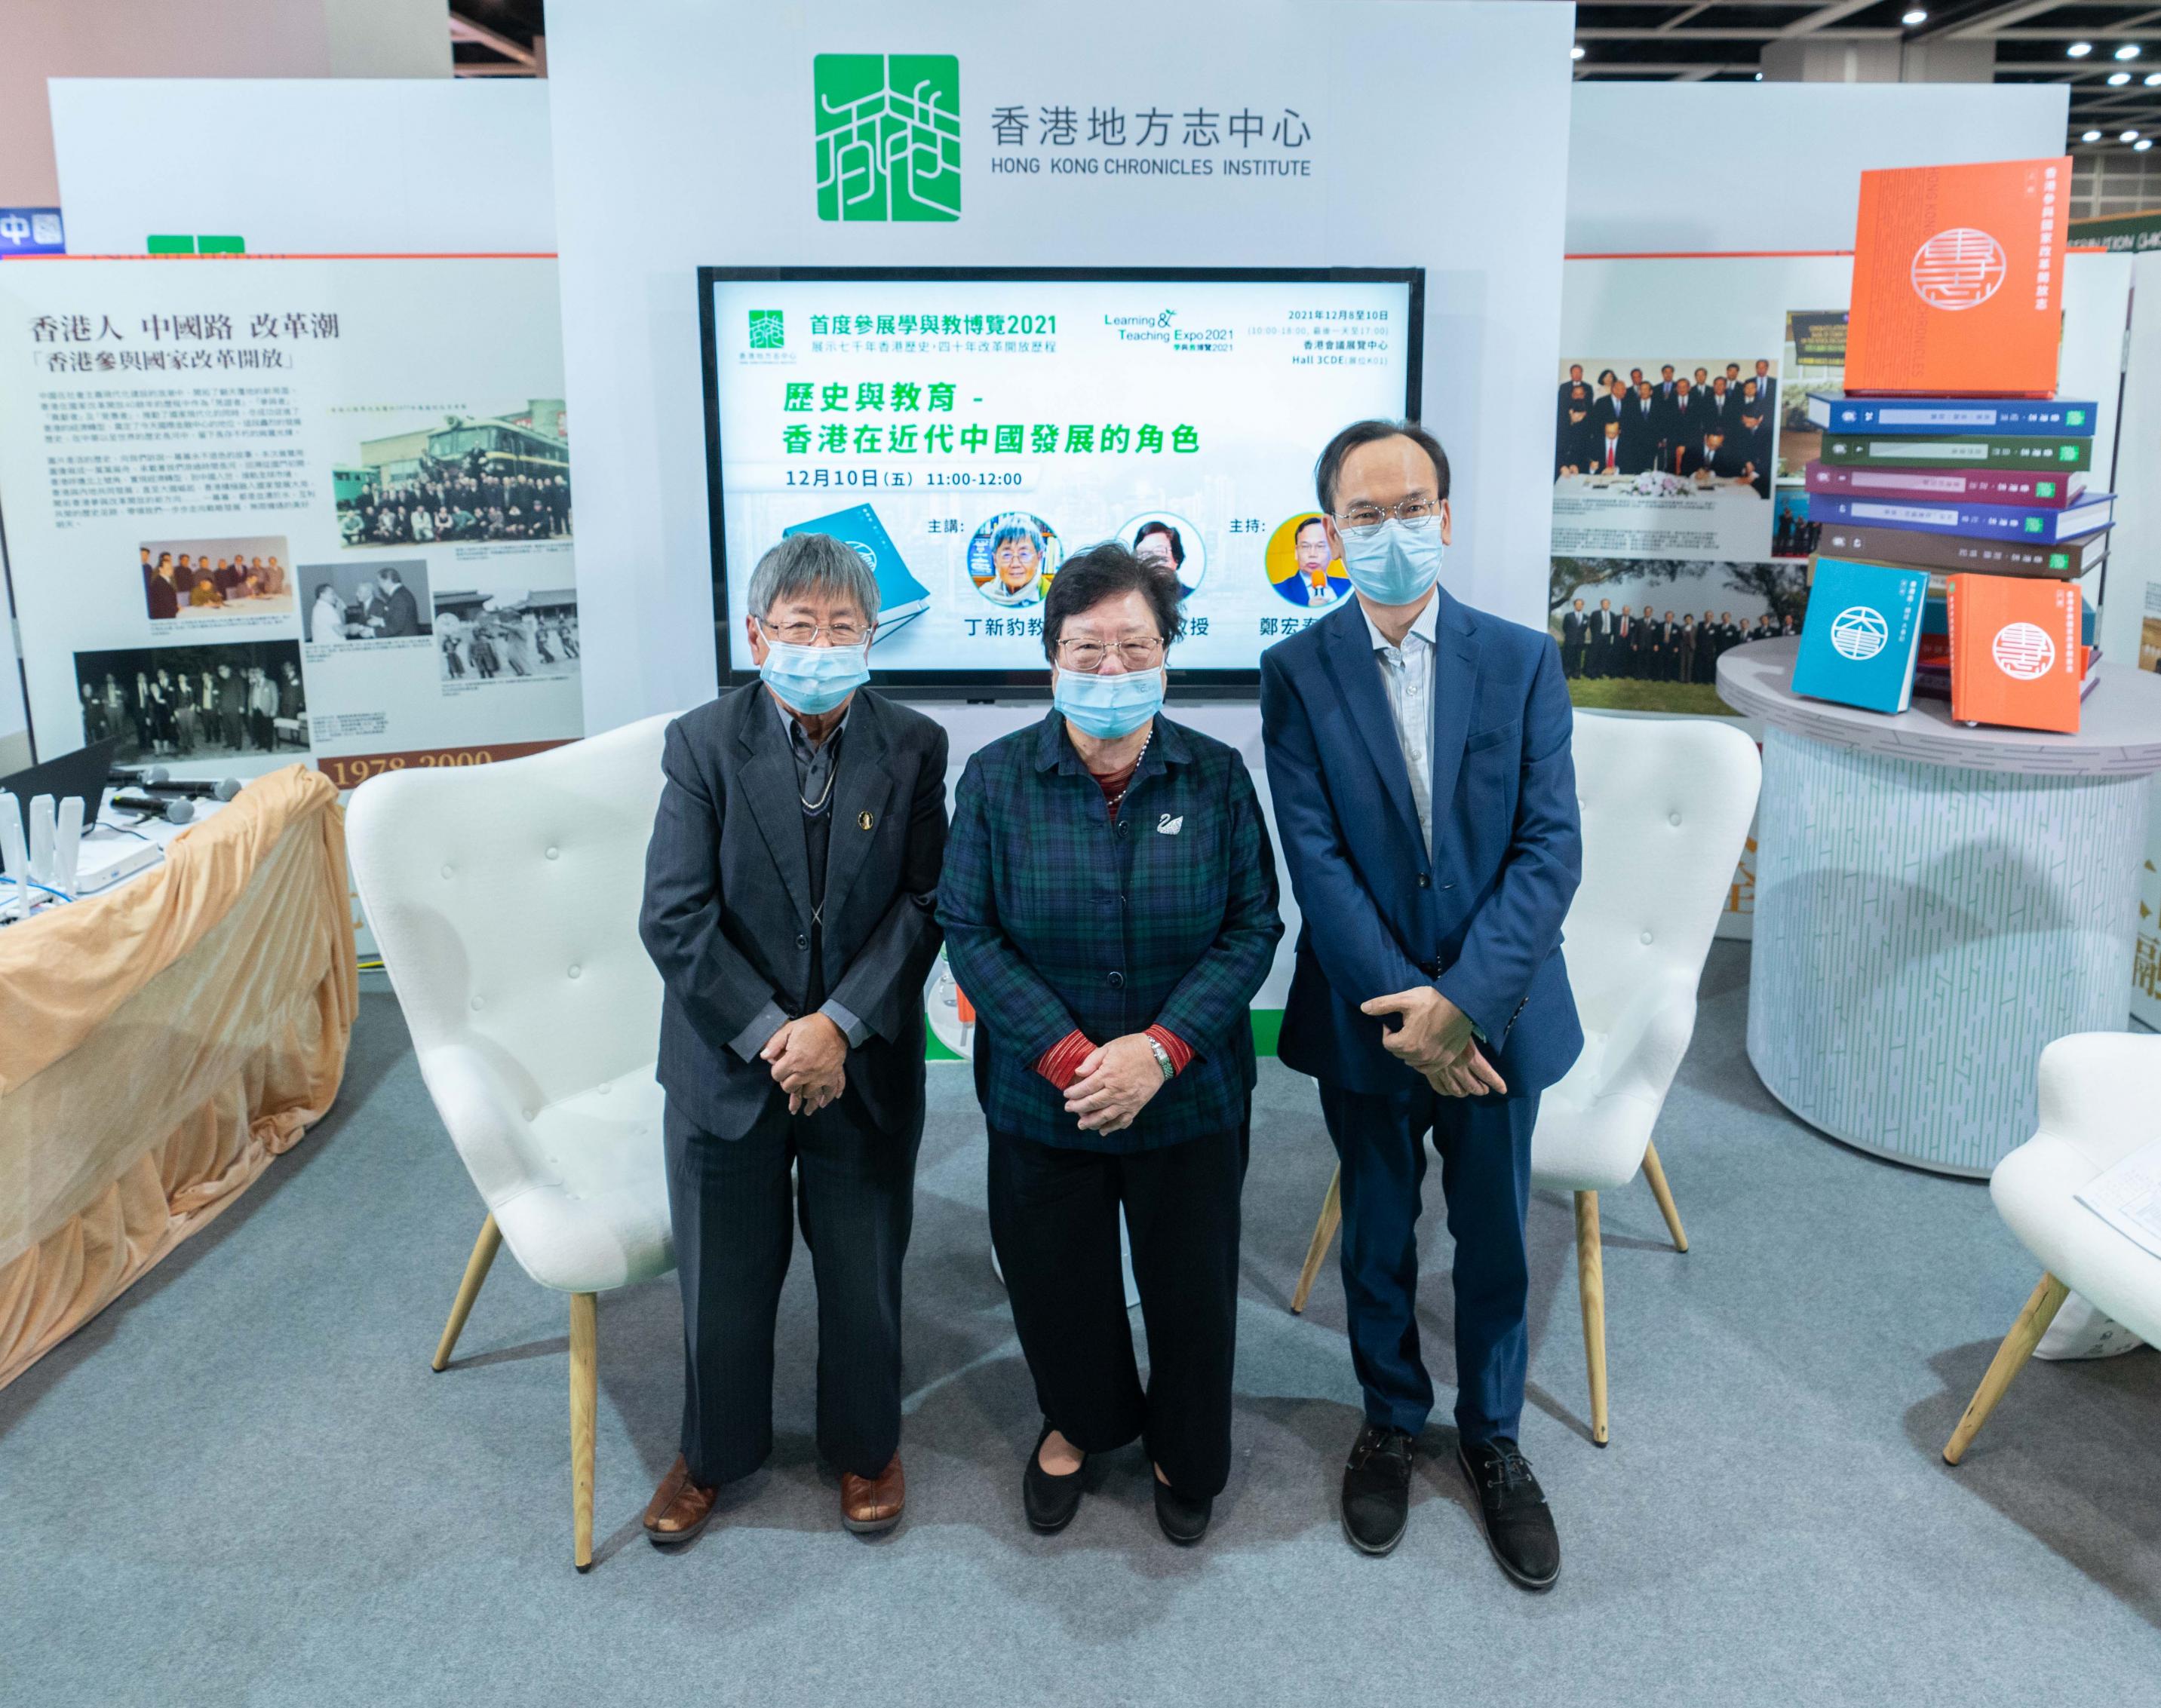 （左起）丁新豹教授、劉佩瓊教授、鄭宏泰博士主講「歷史與教育 - 香港在近代中國發展的角色」。